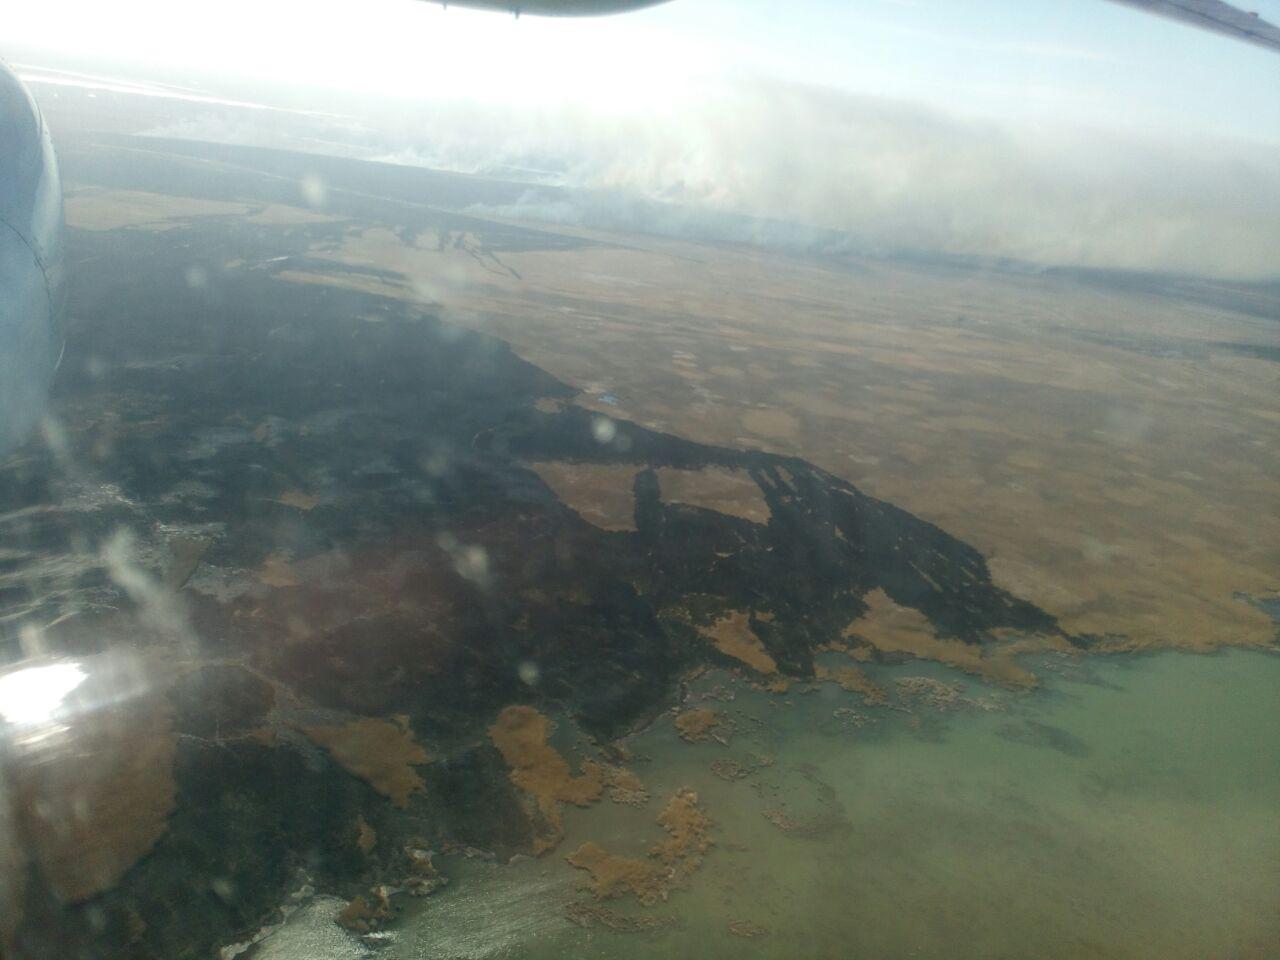 В Вилковском лесничестве разбушевался мощный пожар, к тушению которого привлечена авиация